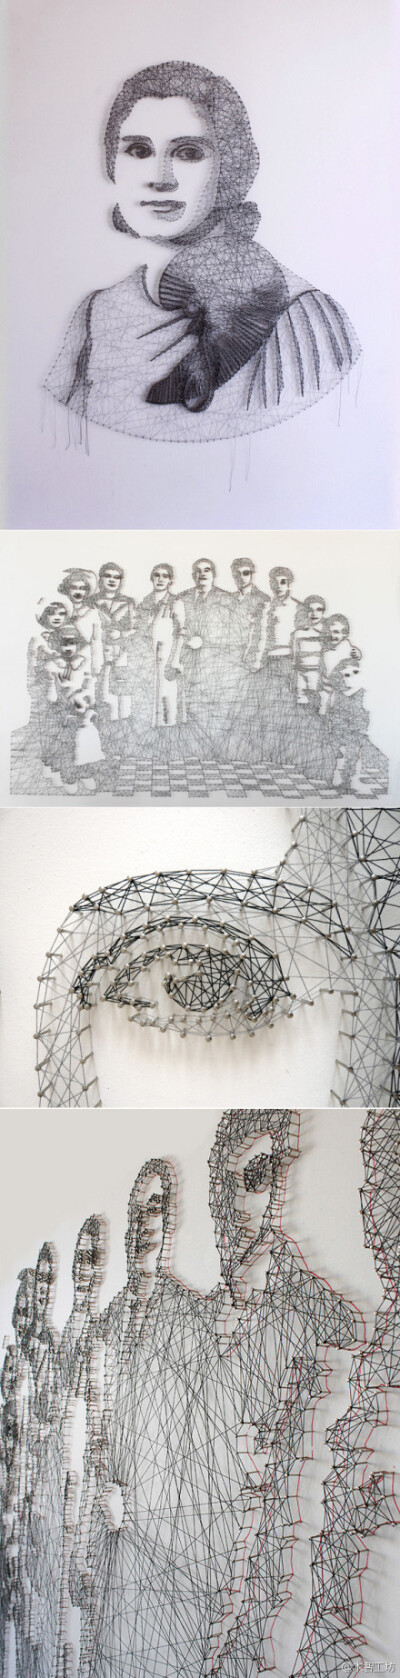 艺术家Pamela Campagna用一种很特别的方式作画，现在墙上钉钉子，然后用线连接各点，最后慢慢形成图案，每幅画都要花费1个月之久。 via: http://t.cn/SyxpVZ